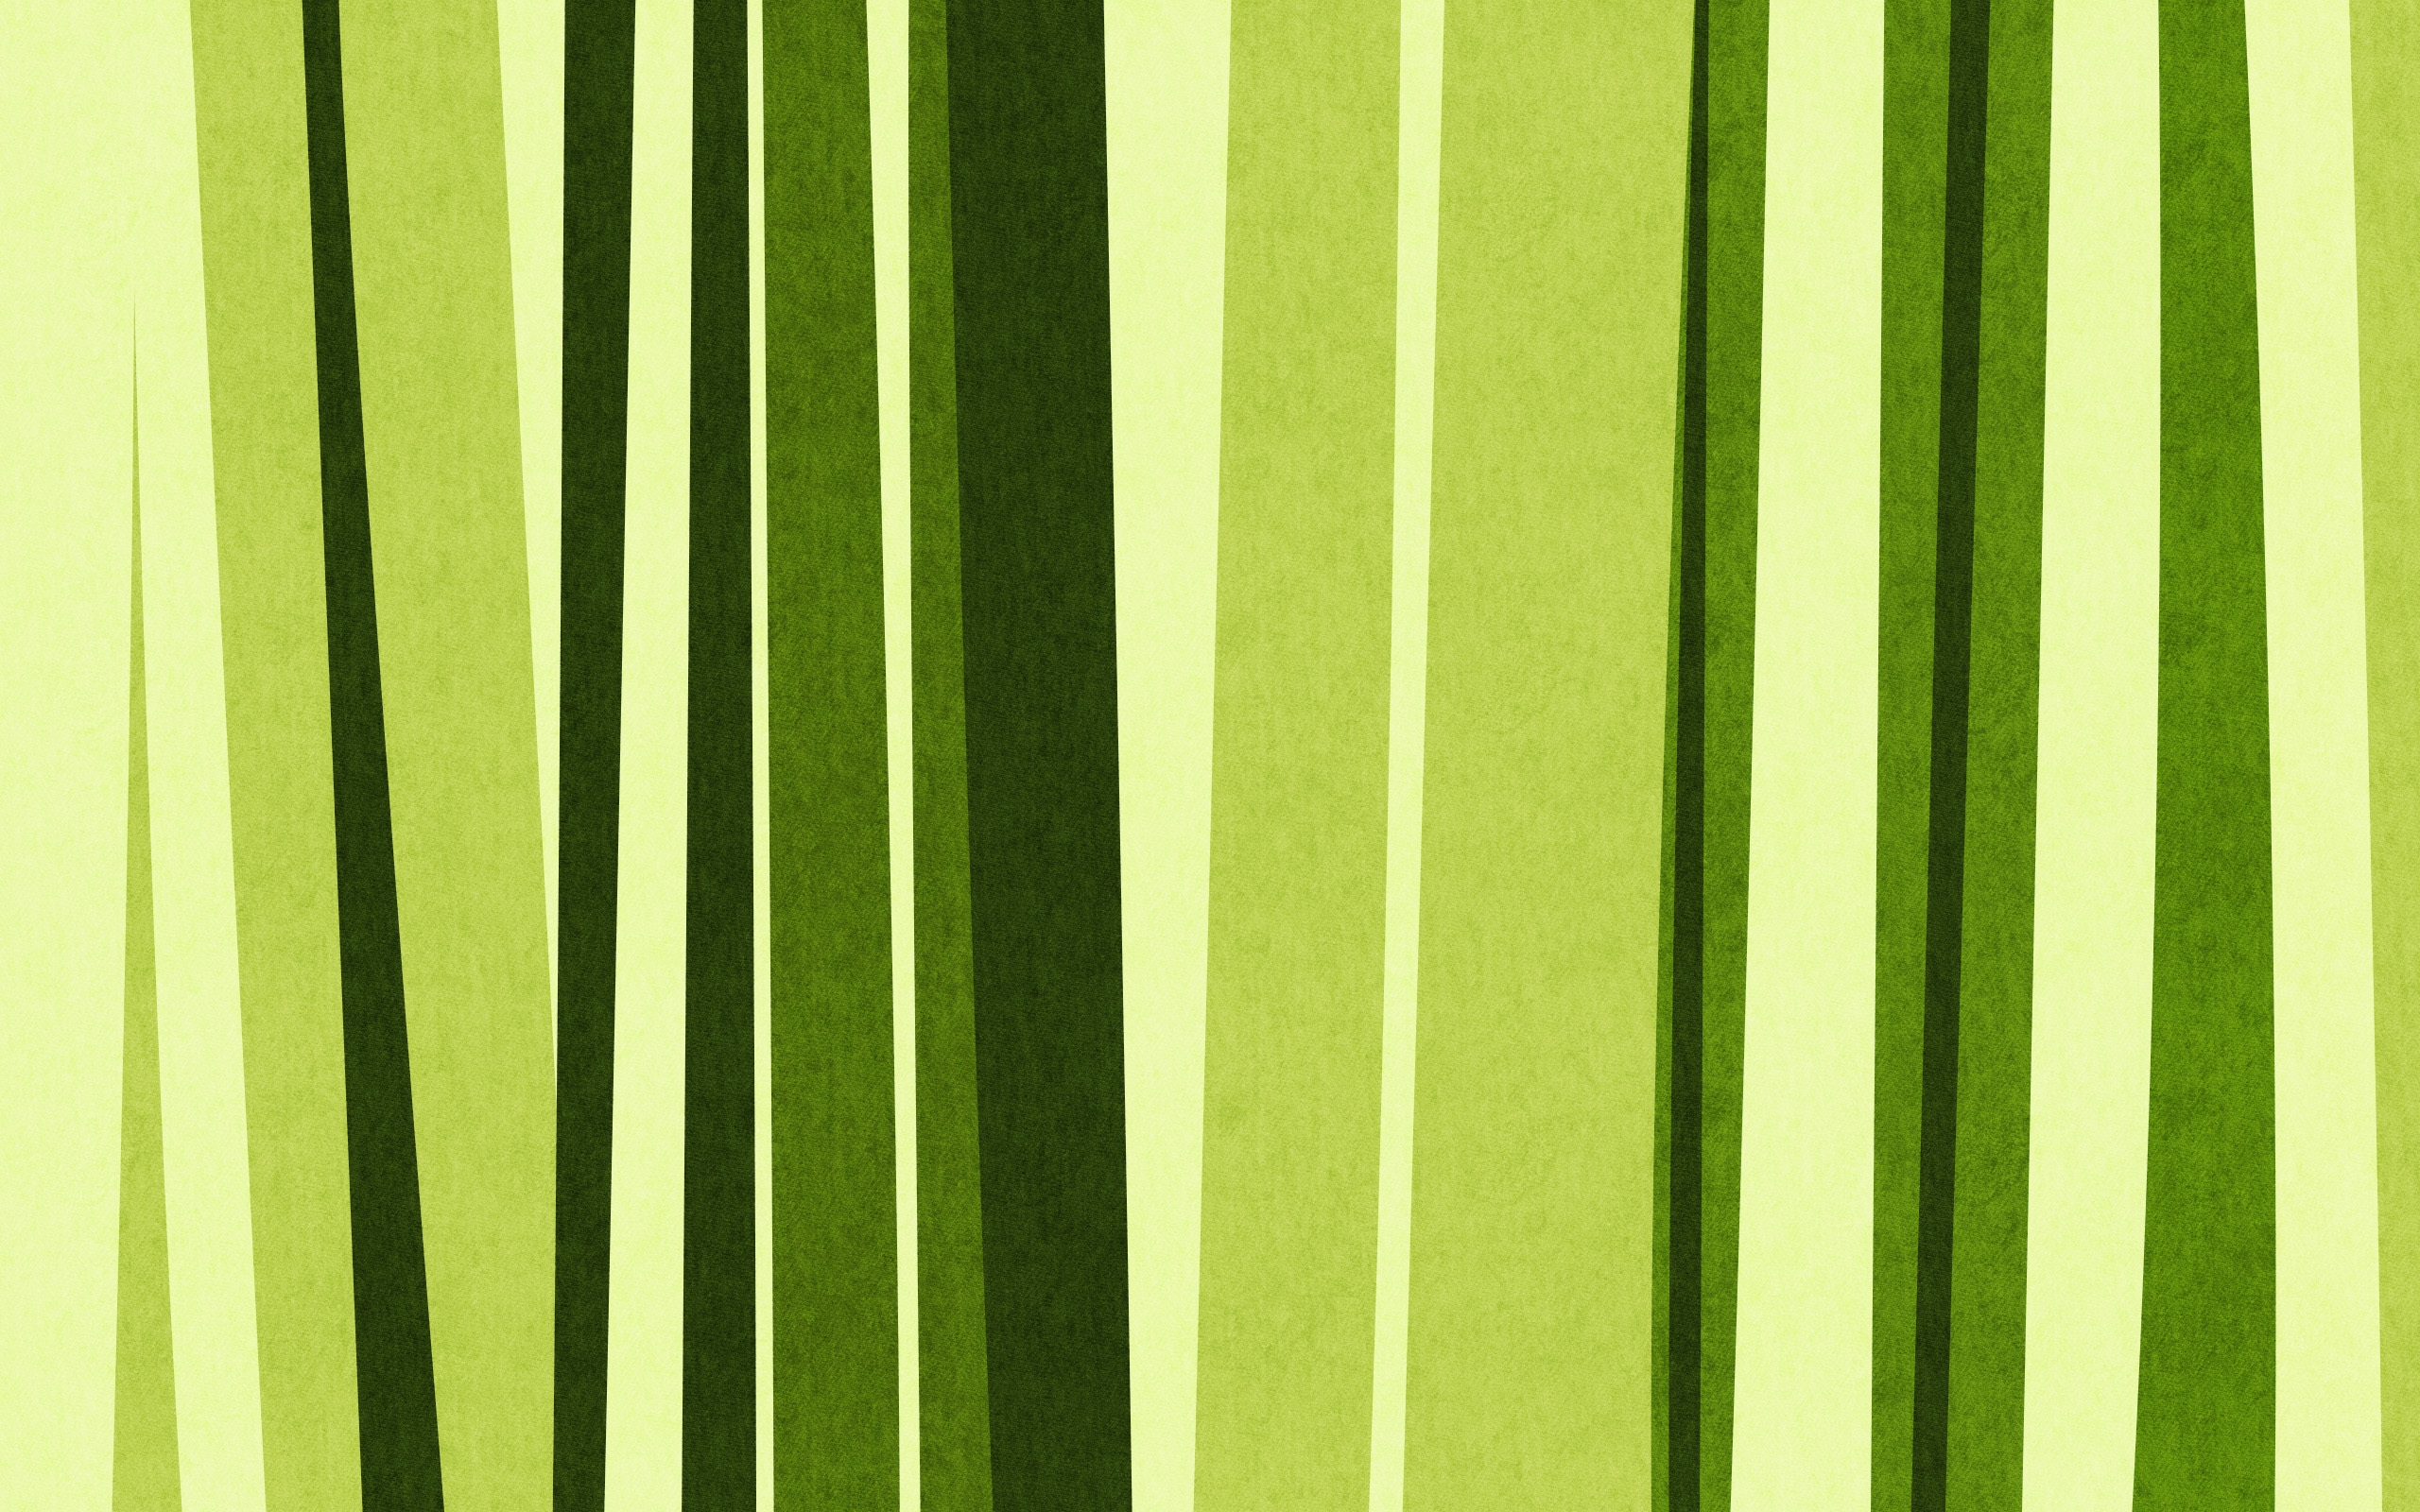 [50+] Vertical 4K Wallpapers on WallpaperSafari